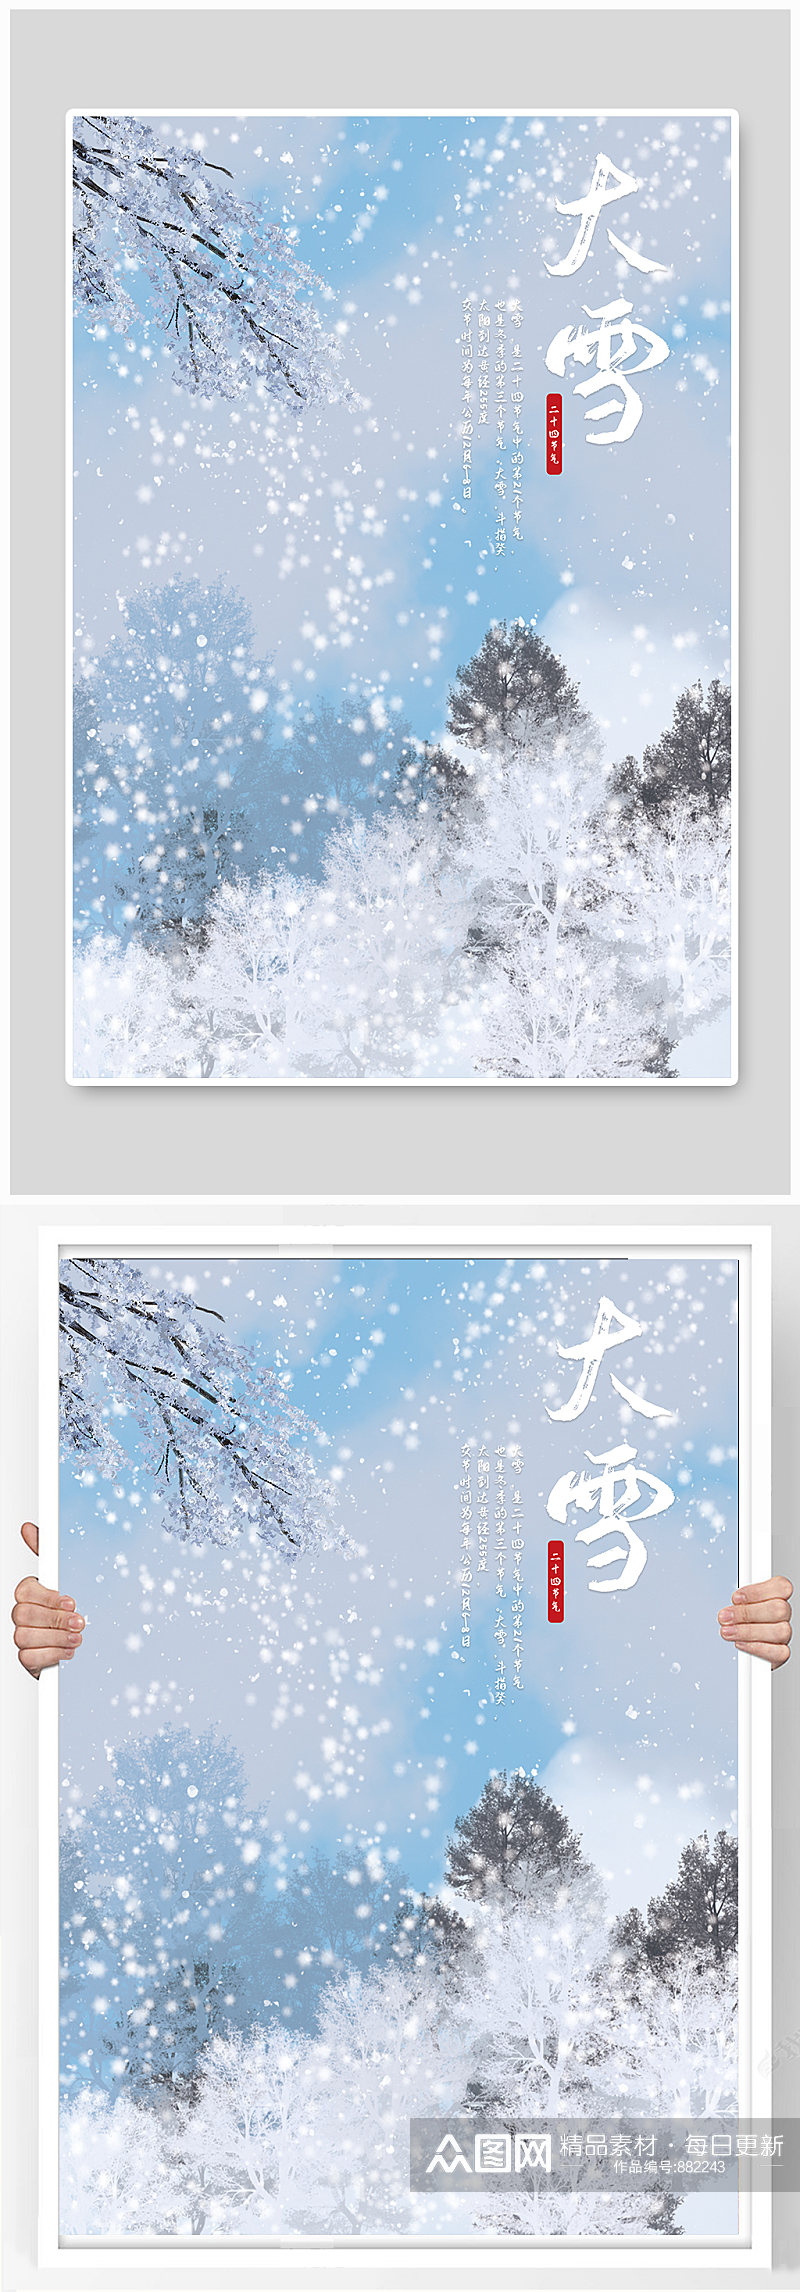 中国传统节日二十四节气简约大雪海报素材